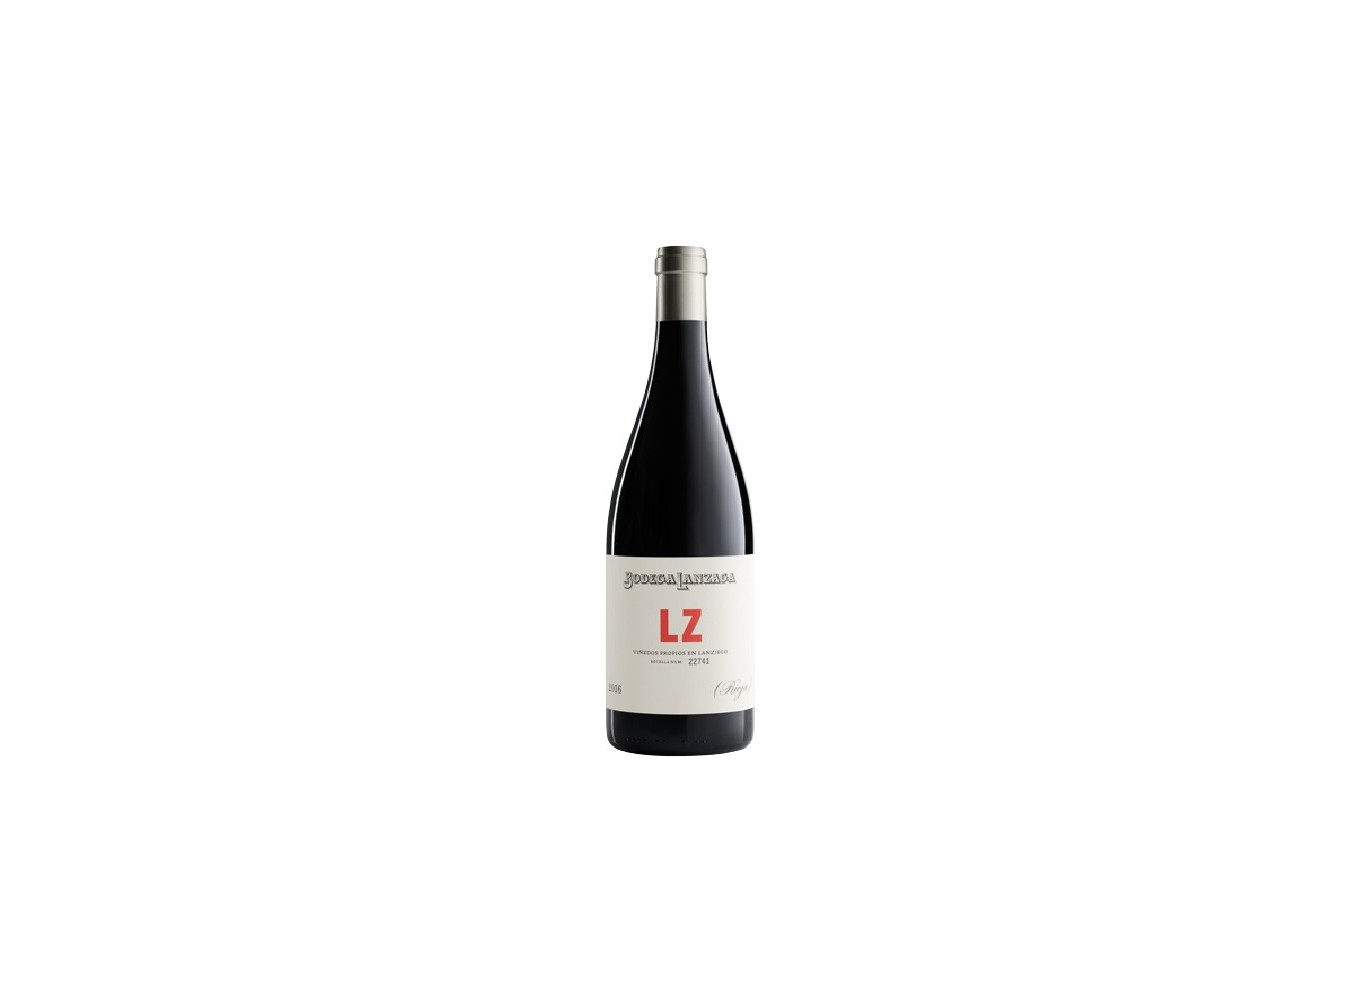 LZ Rioja 2017